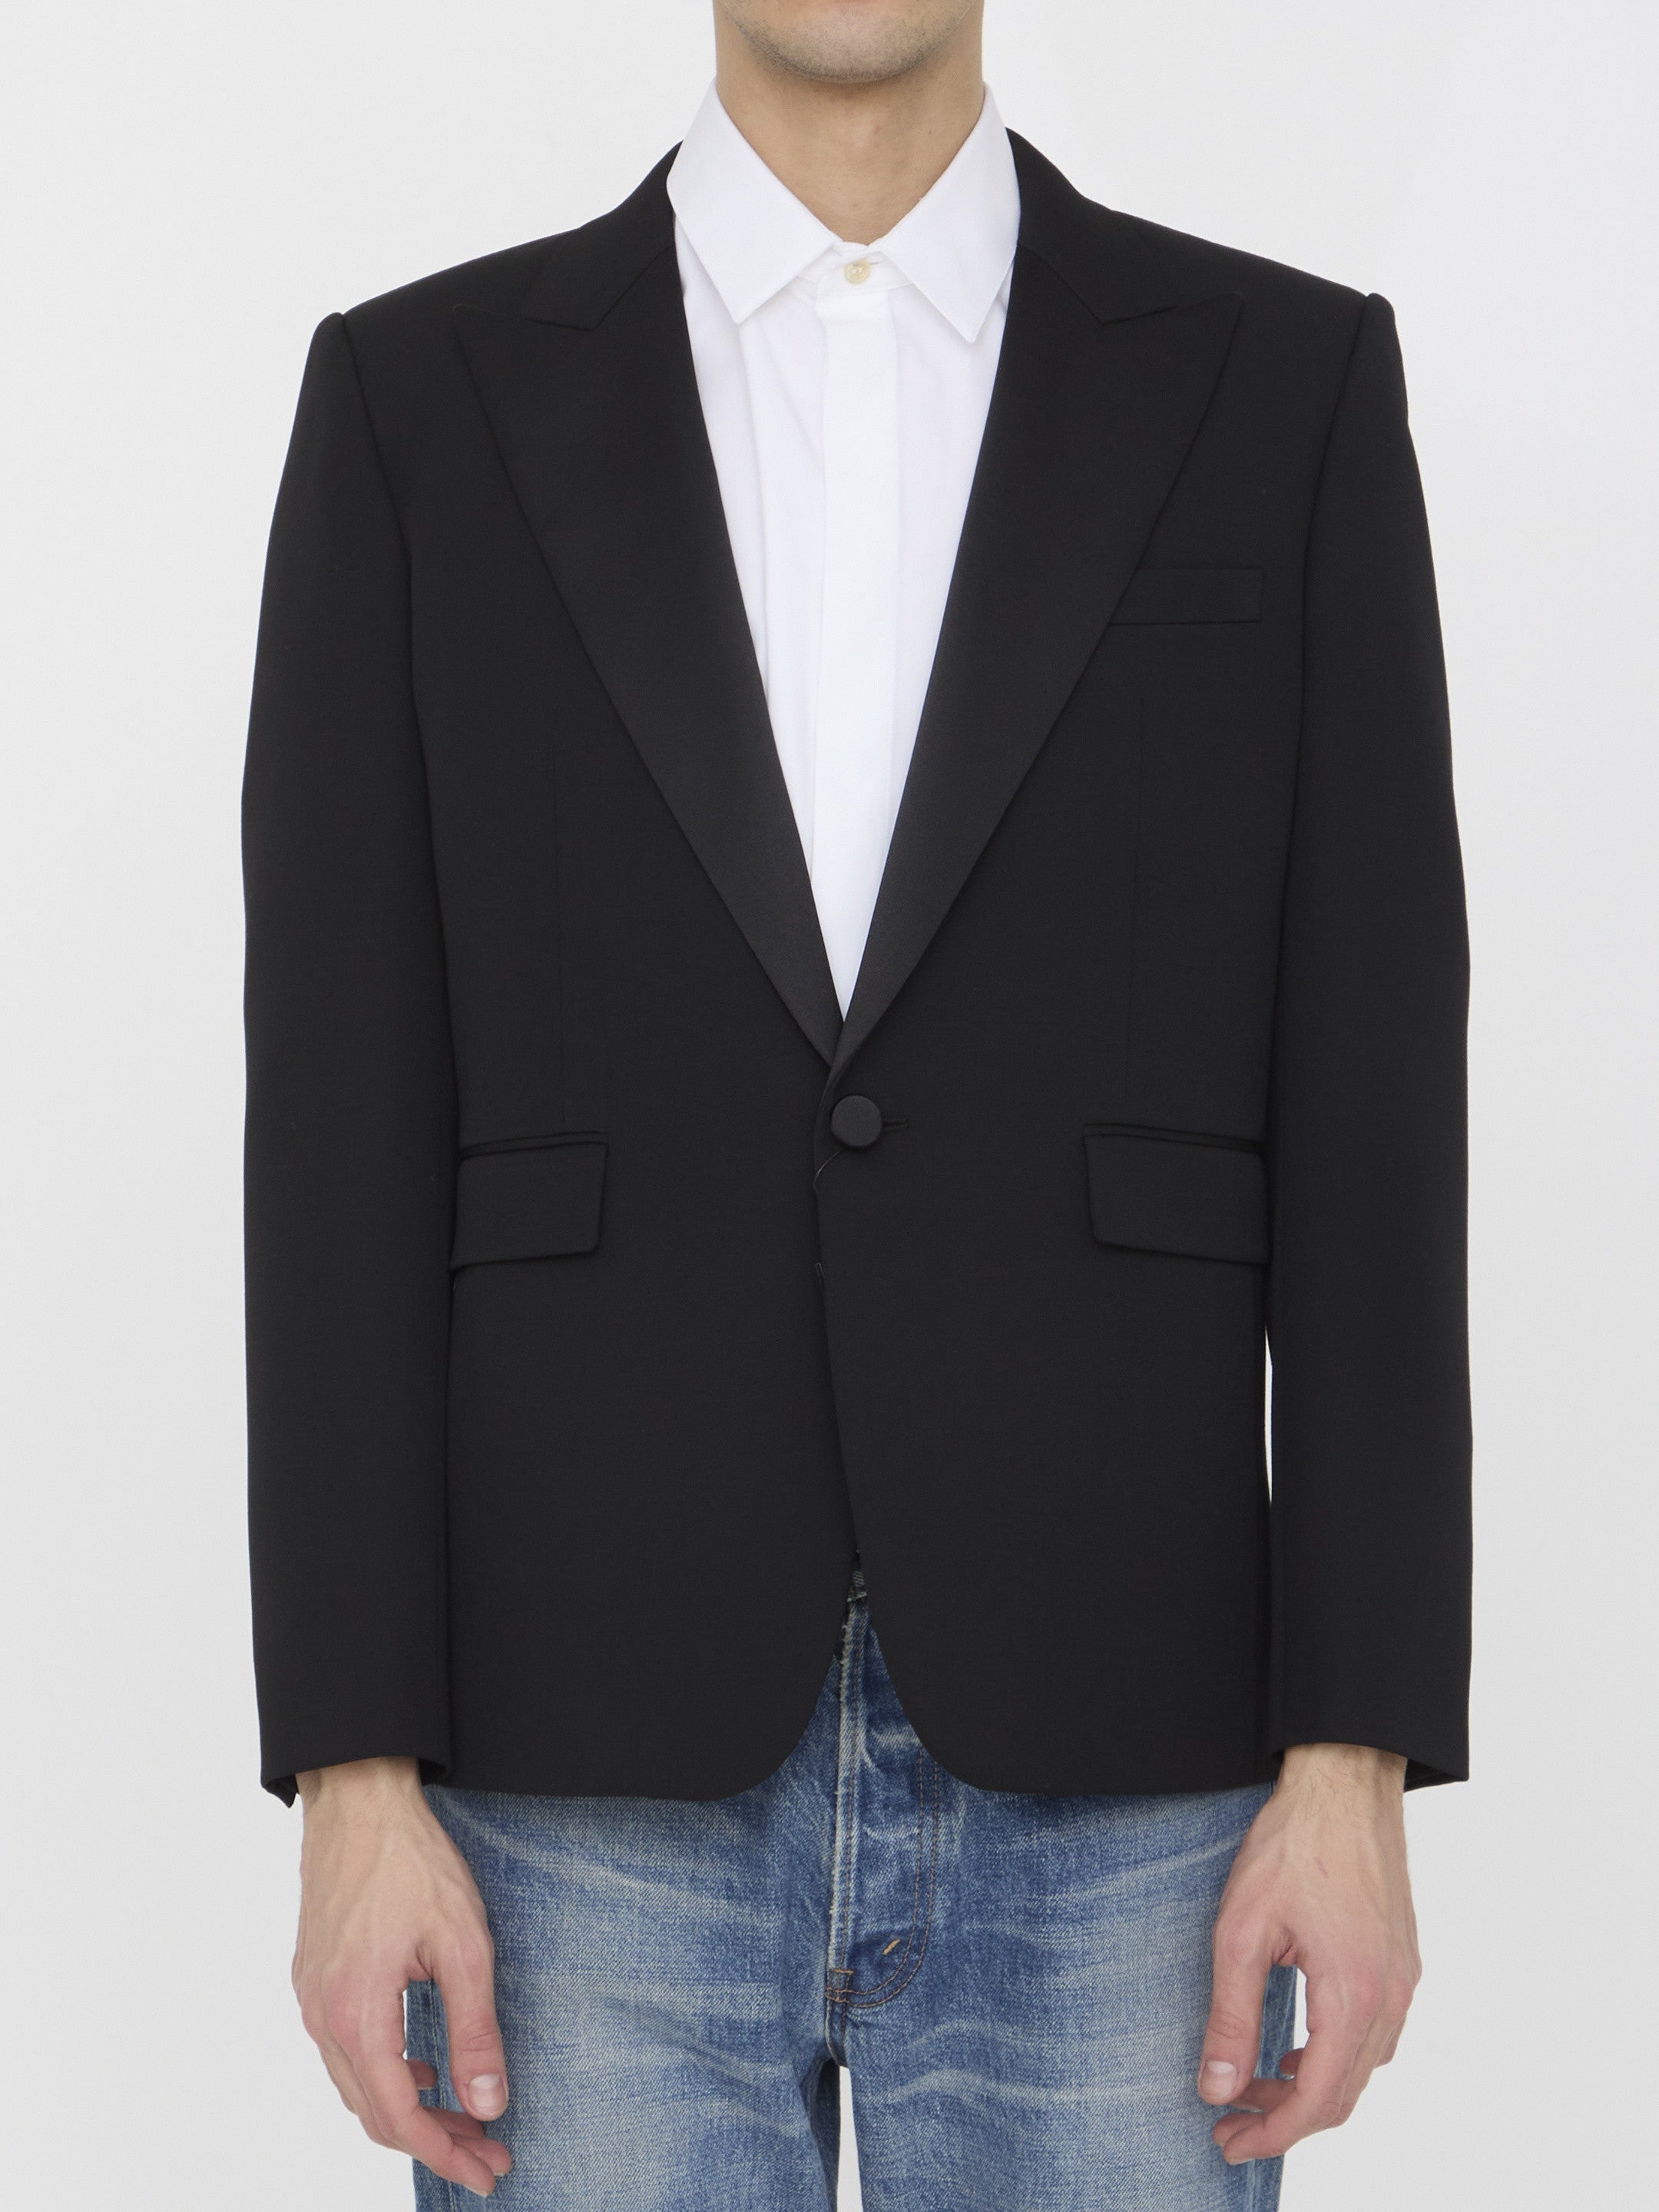 SAINT-LAURENT-OUTLET-SALE-Tuxedo-jacket-in-grain-de-poudre-Jacken-Mantel-48-BLACK-ARCHIVE-COLLECTION.jpg